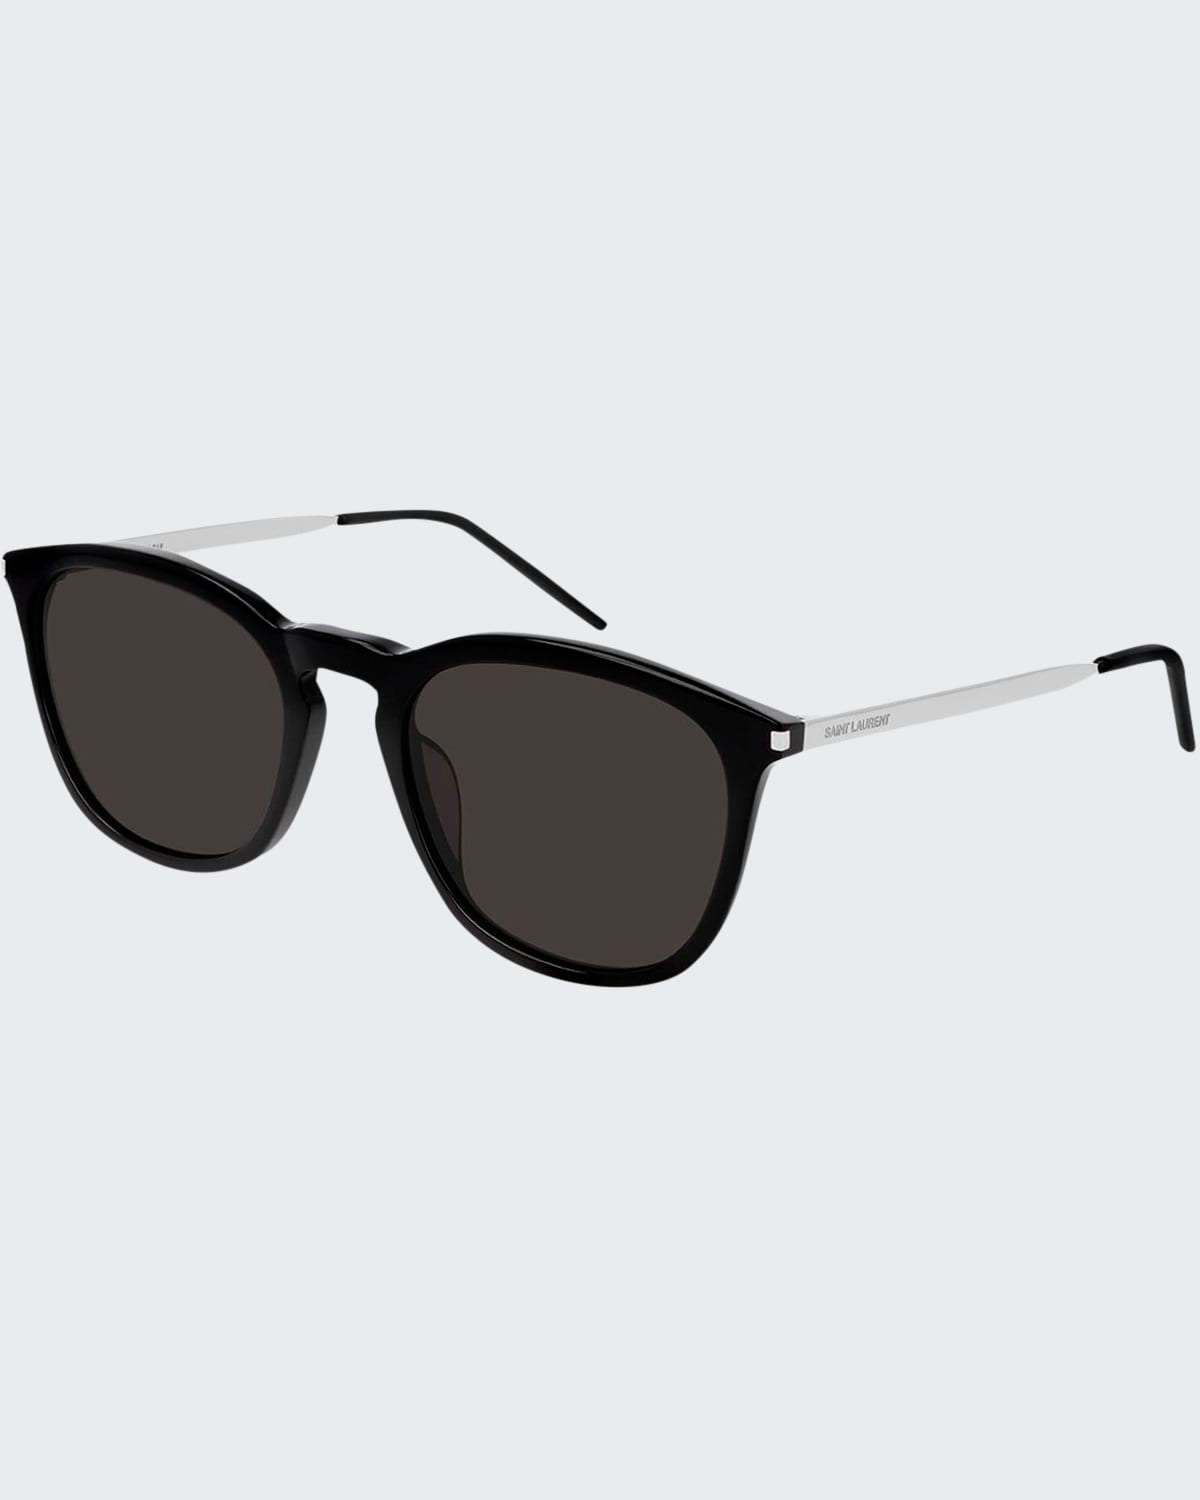 Men's Square Acetate/Metal Sunglasses